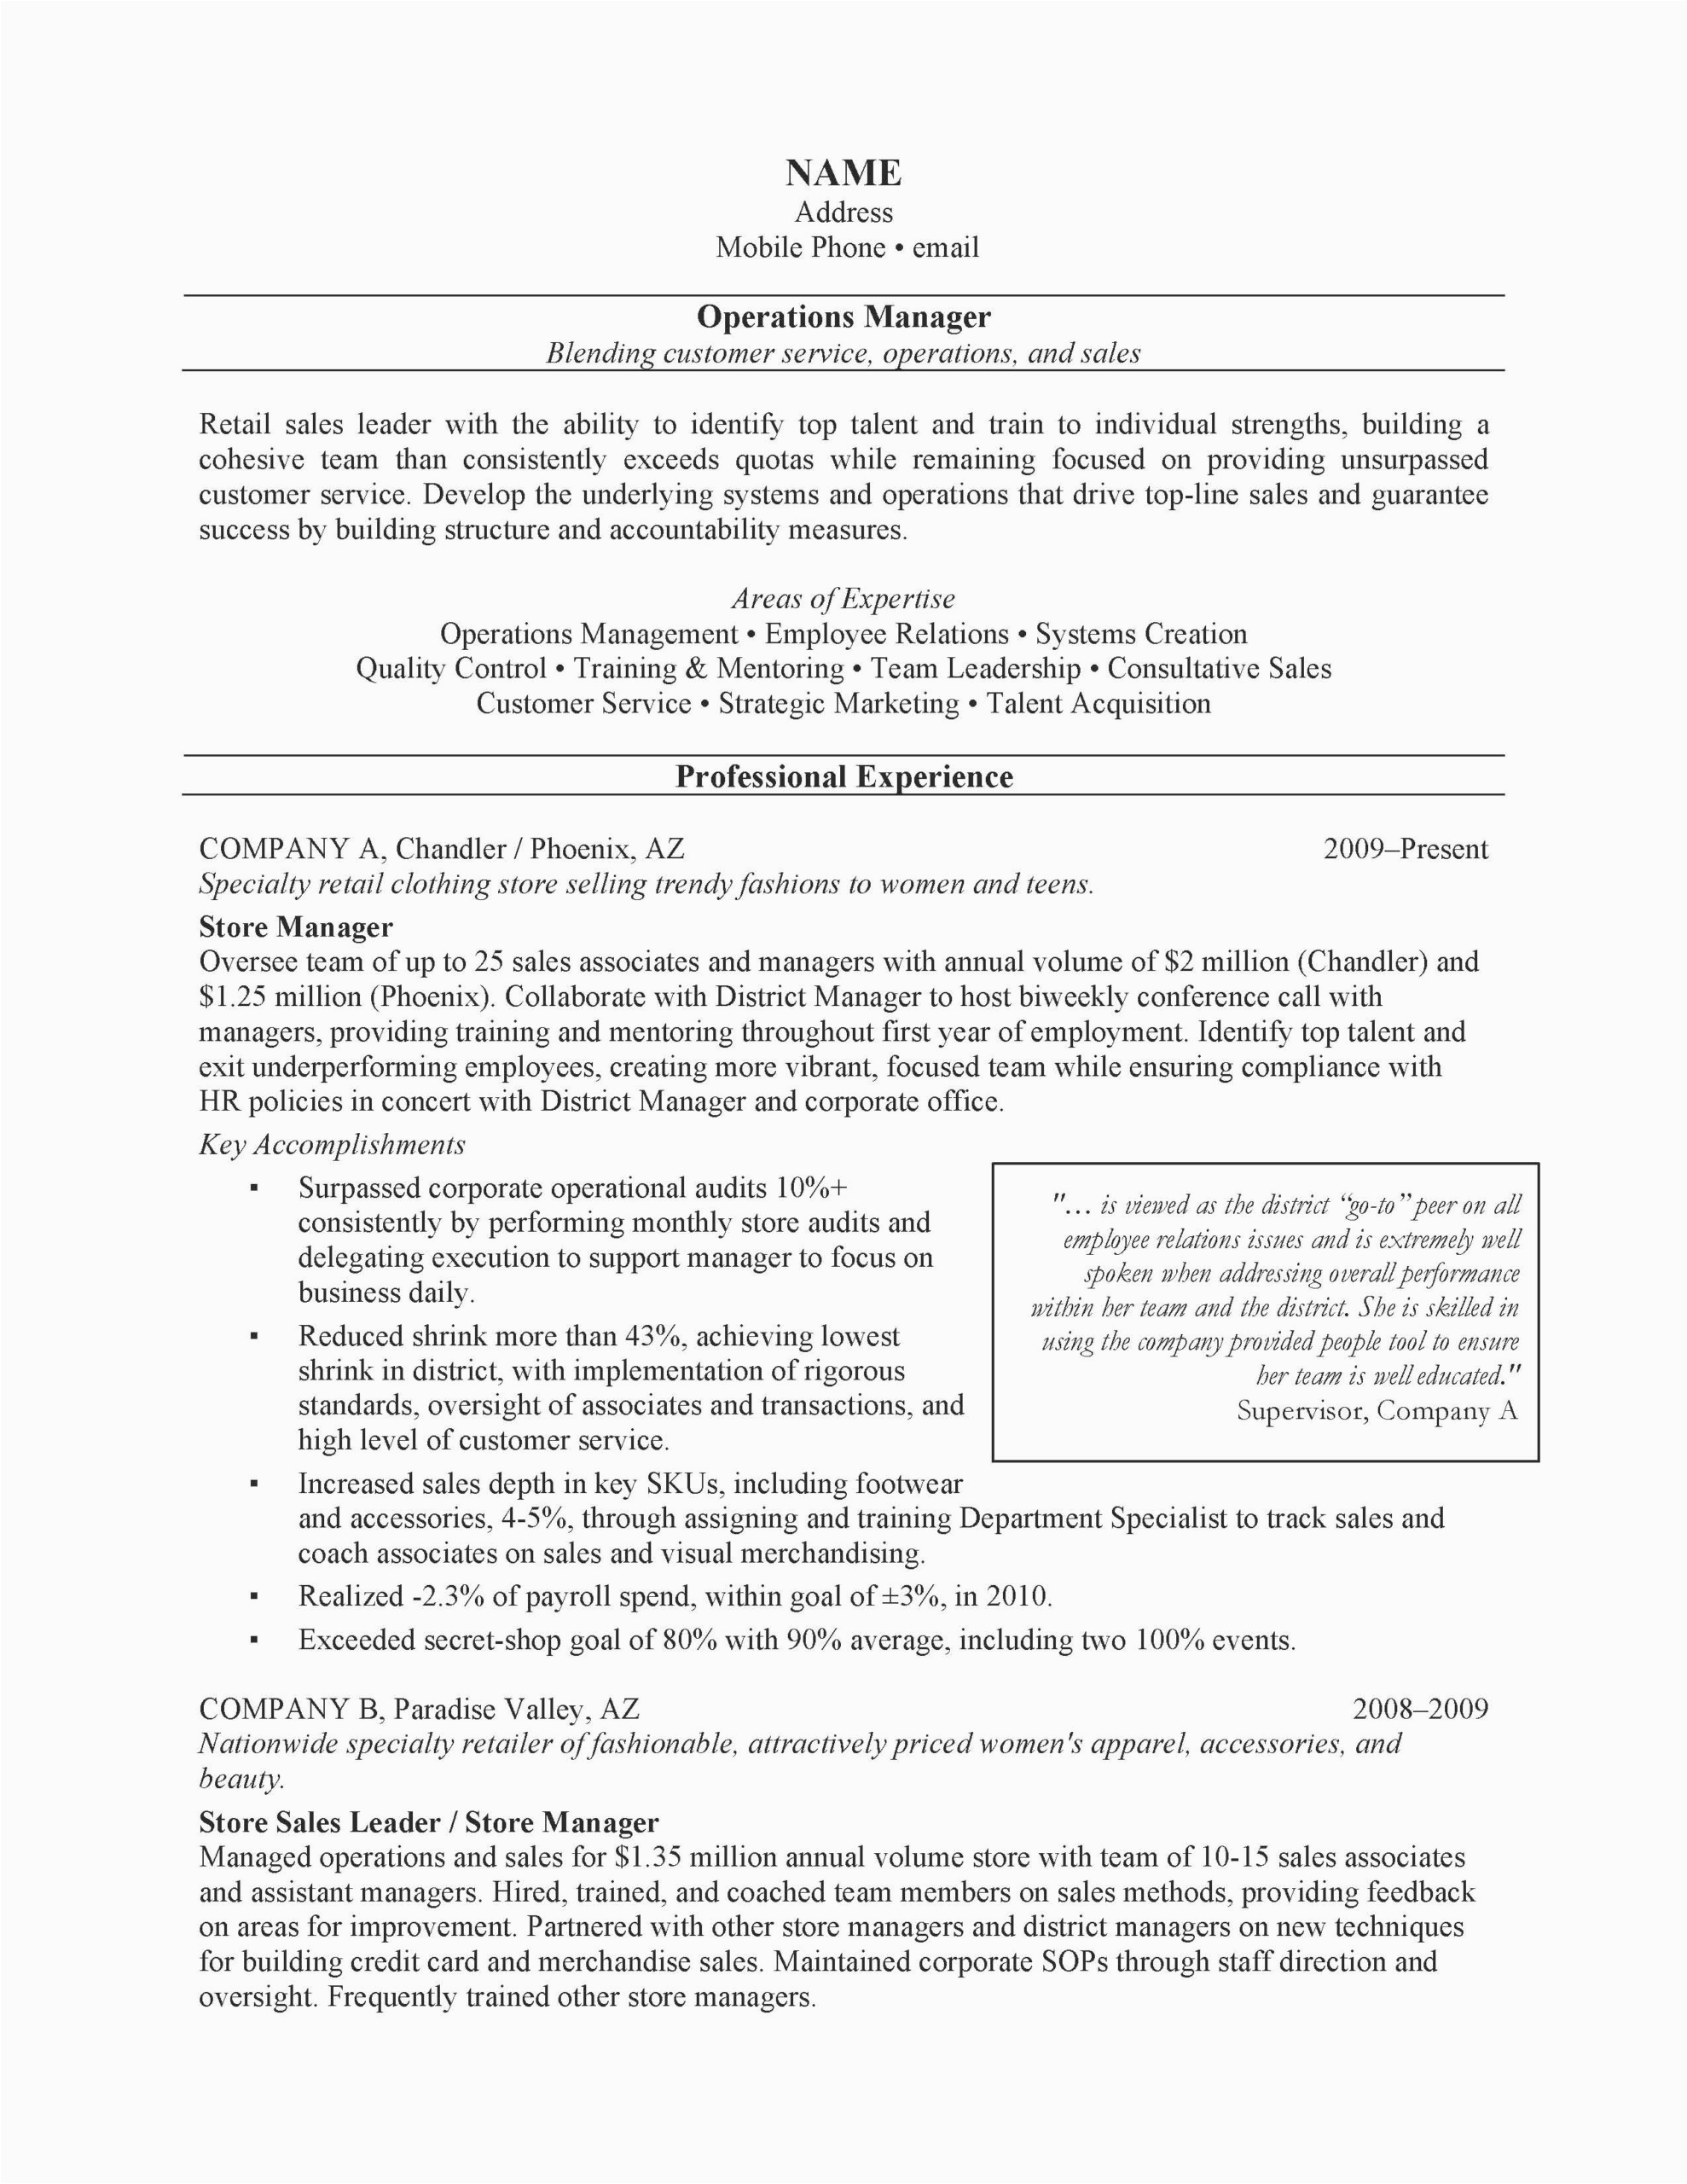 ac plishment resume sample